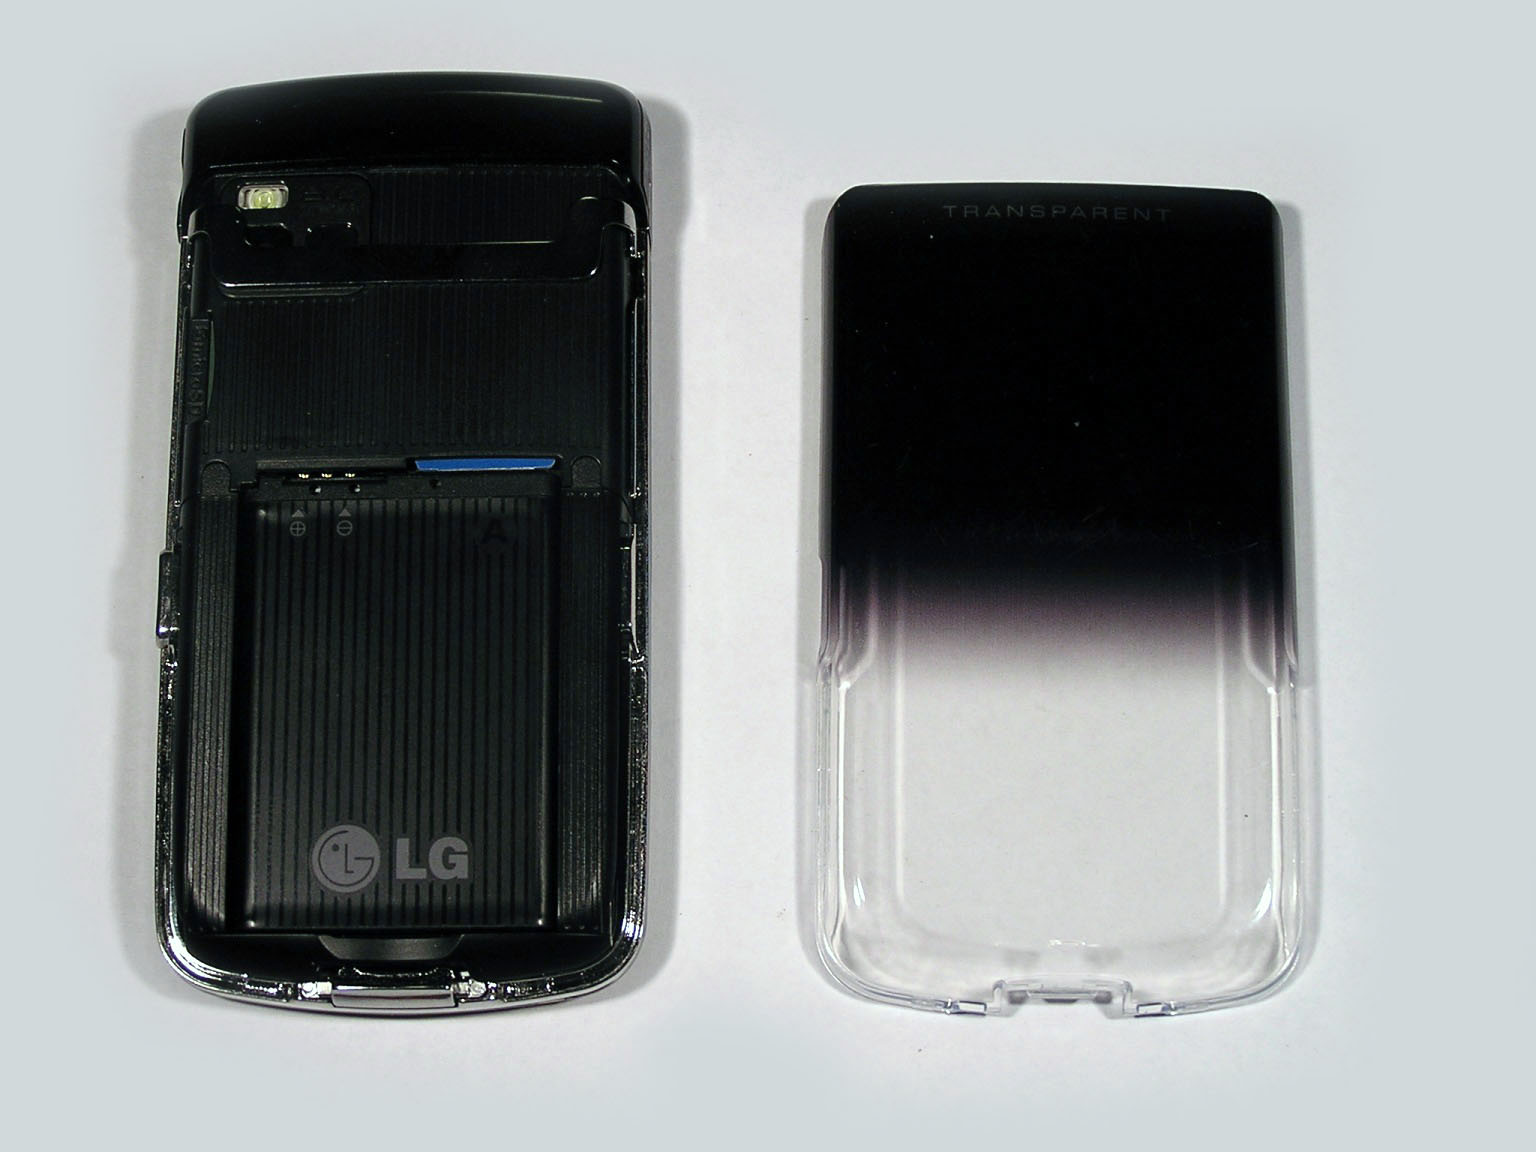 LG GD900 Crystal - Nástupce populární Areny